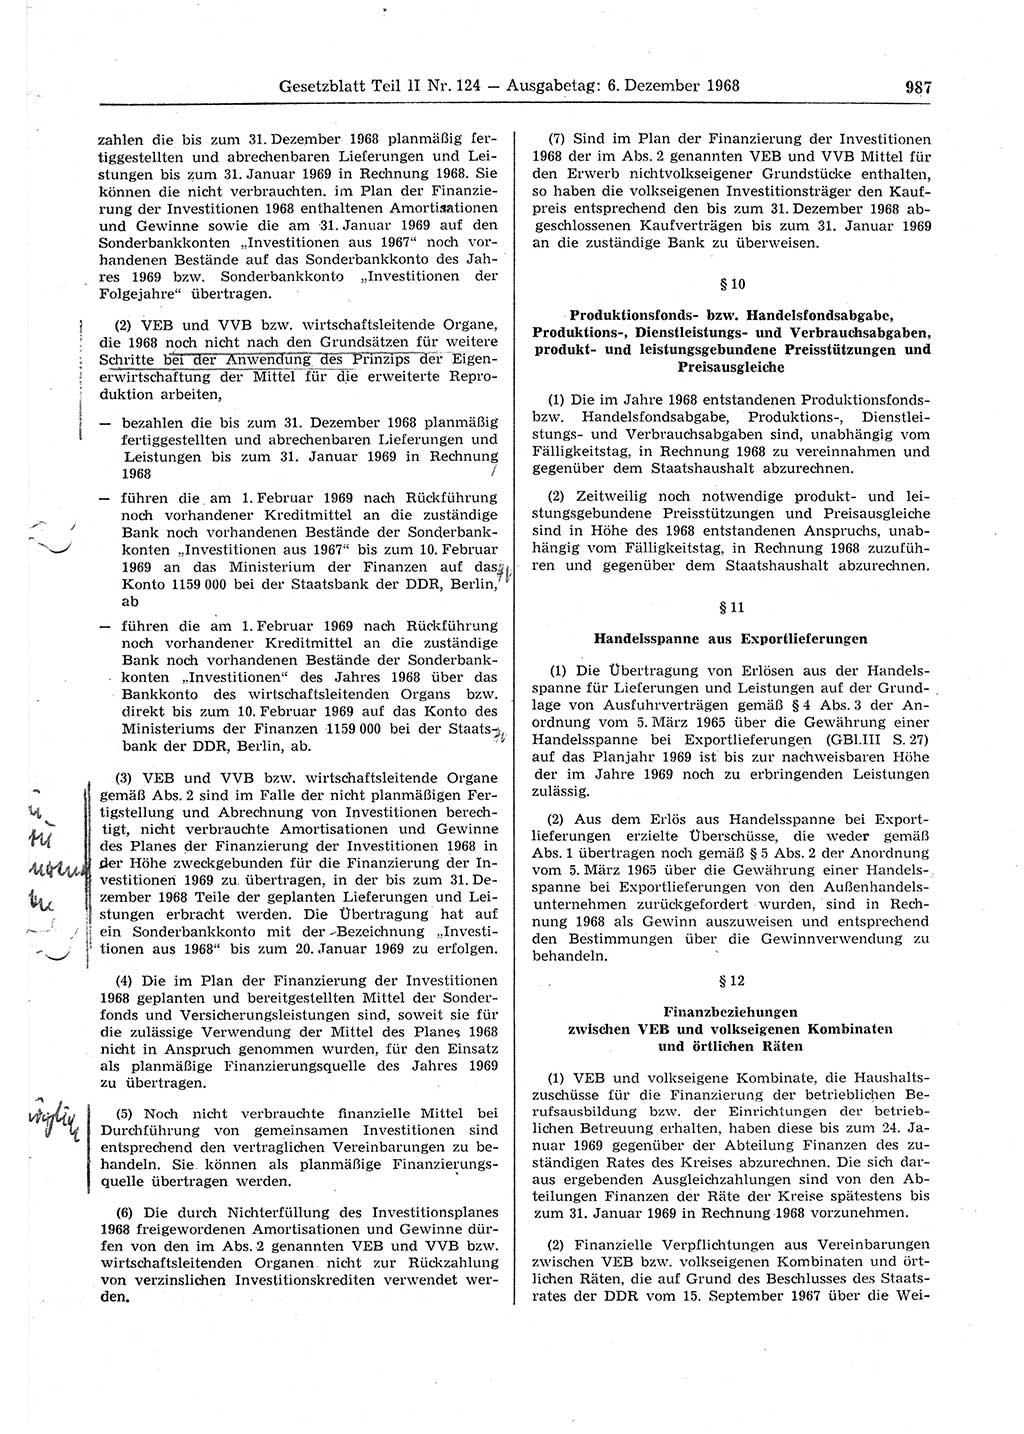 Gesetzblatt (GBl.) der Deutschen Demokratischen Republik (DDR) Teil ⅠⅠ 1968, Seite 987 (GBl. DDR ⅠⅠ 1968, S. 987)